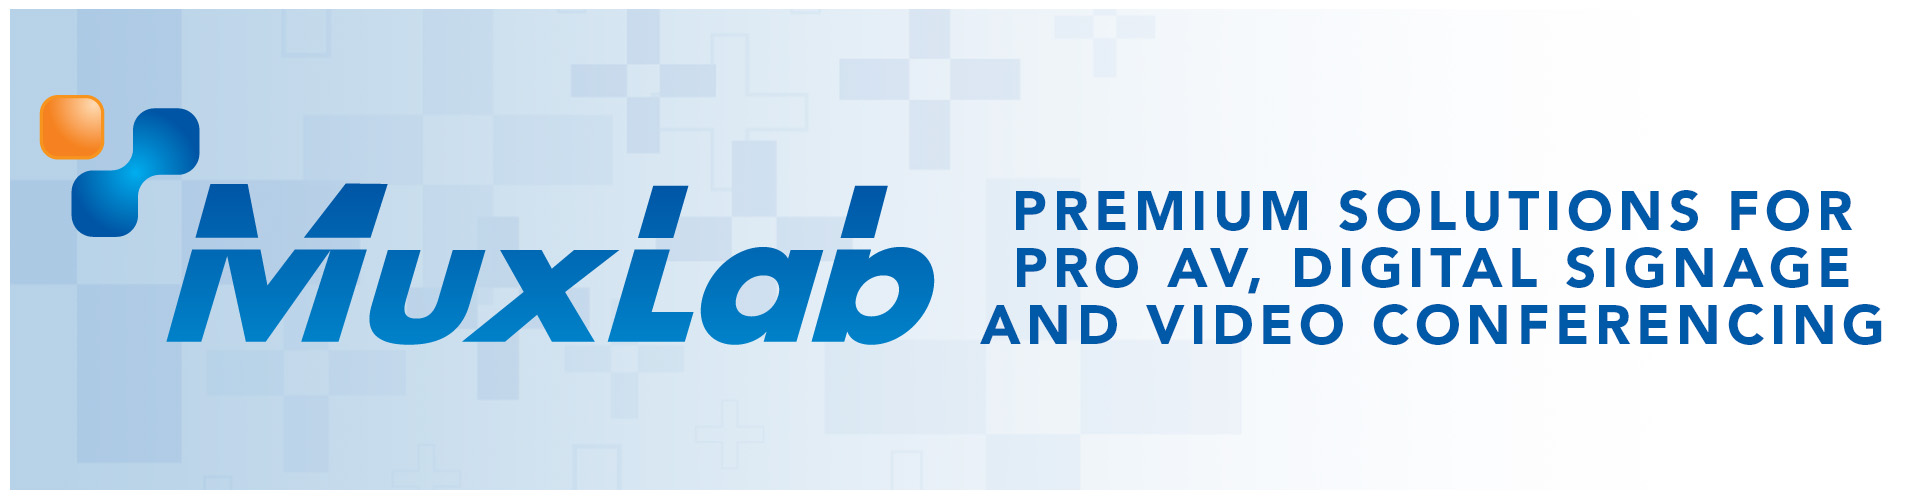 Muxlab Pro AV Solutions at PacRad.com 